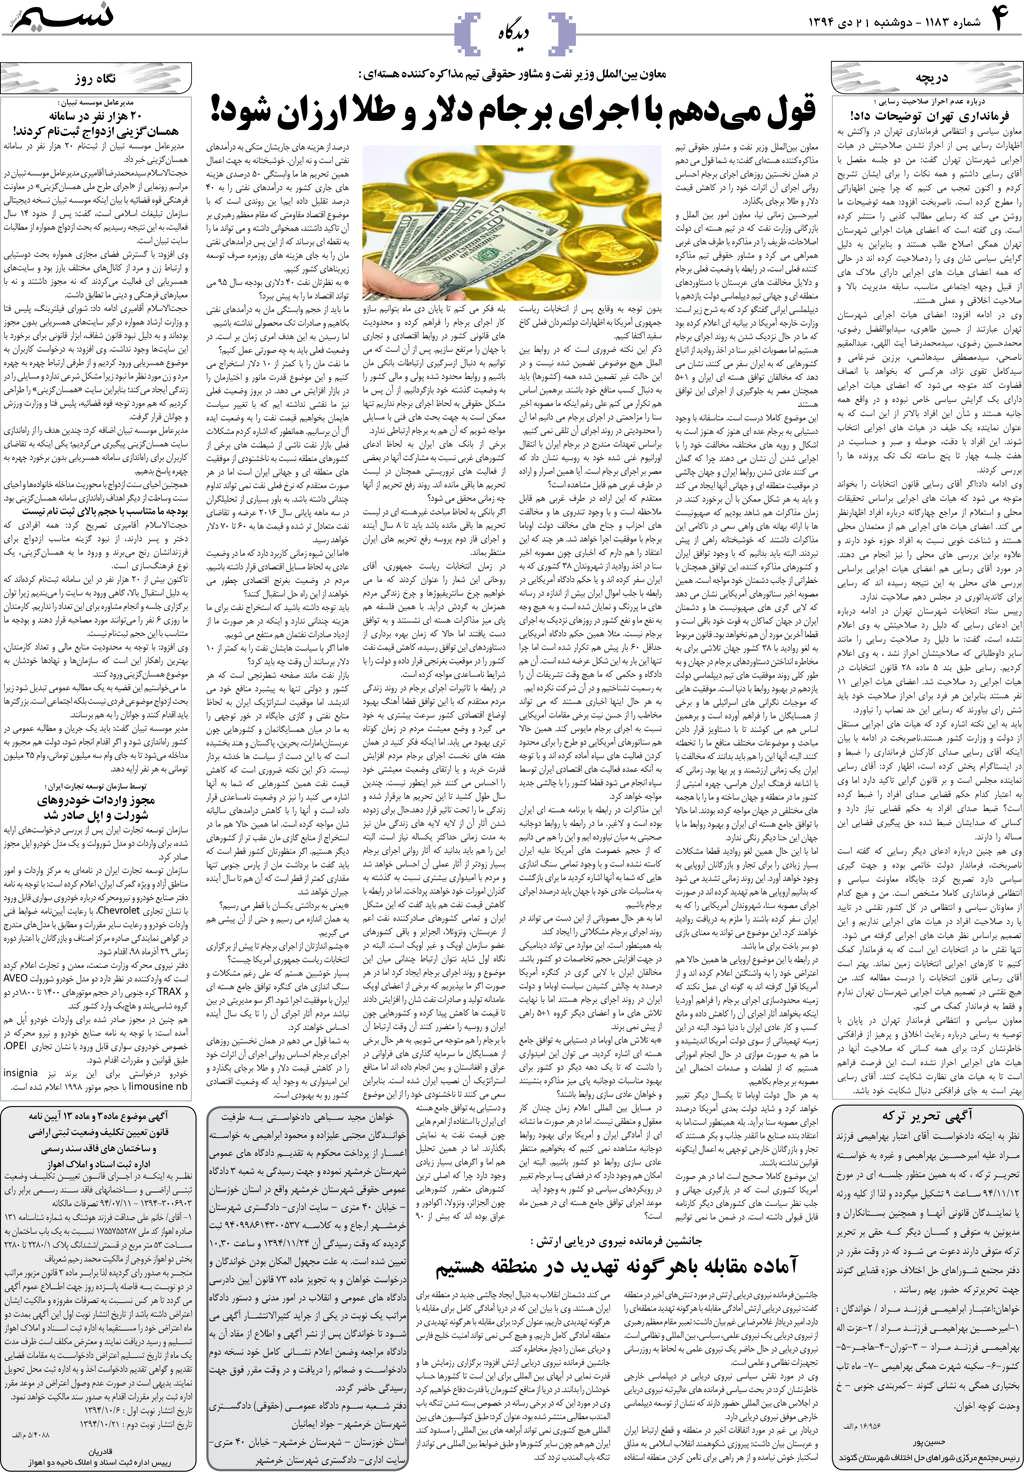 صفحه دیدگاه روزنامه نسیم شماره 1183